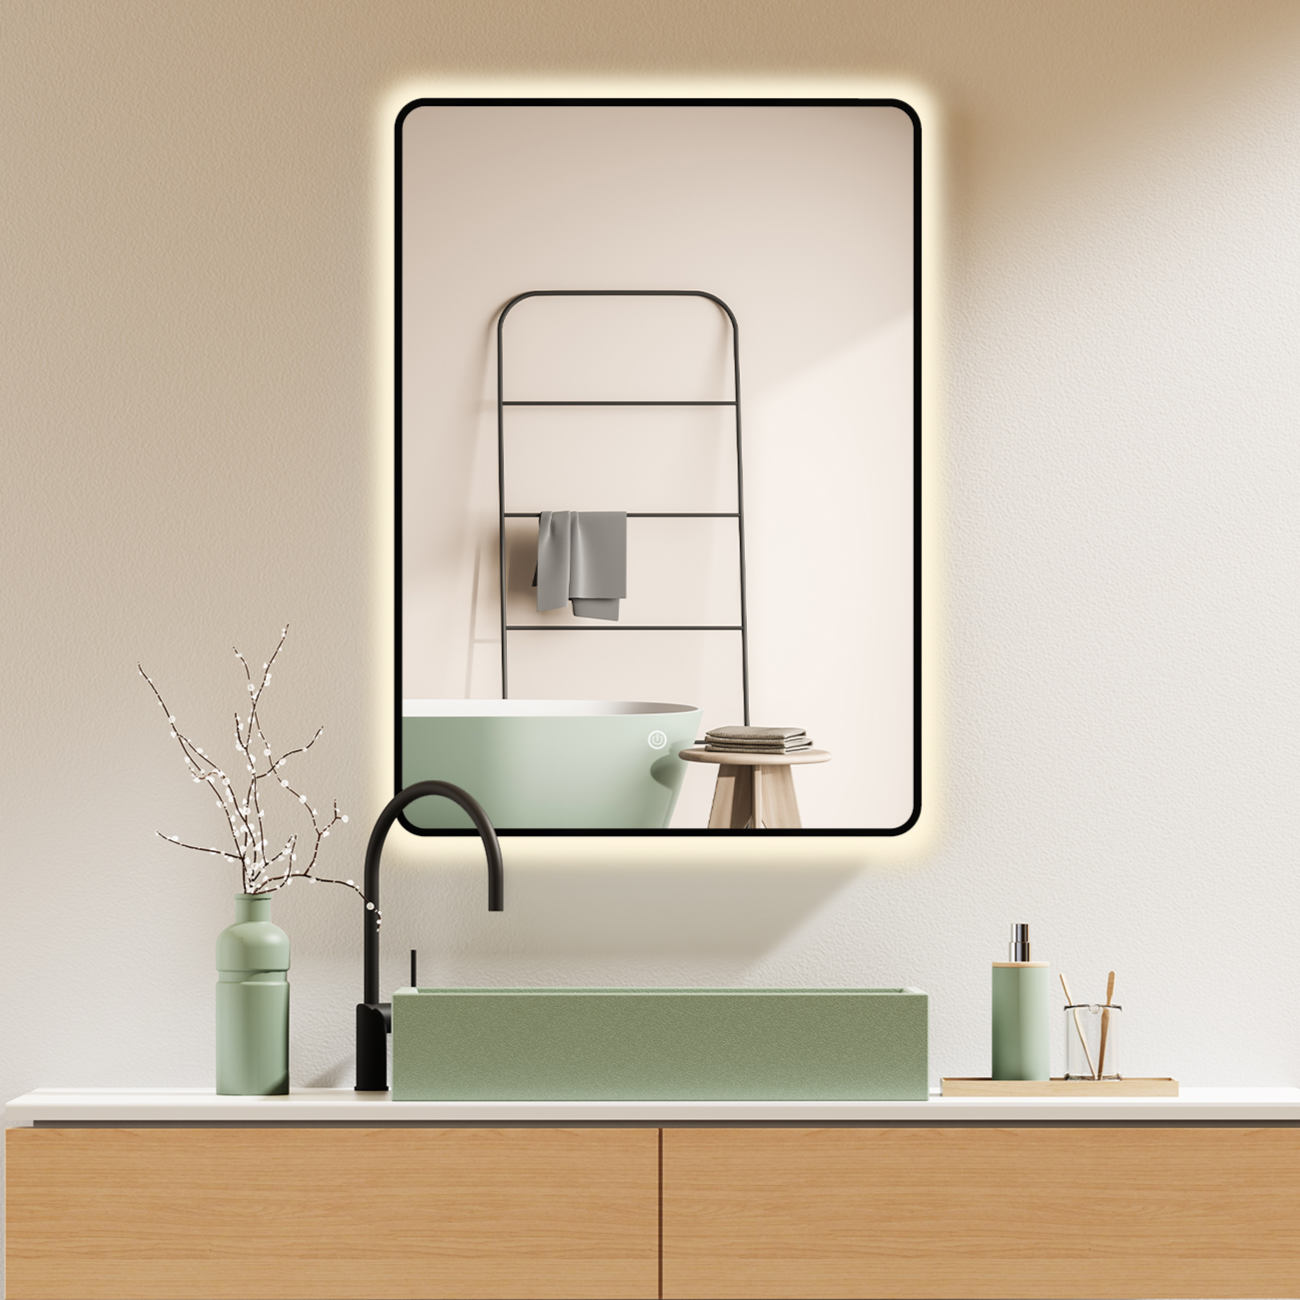 LED Badspiegel, Spiegel mit Beleuchtung, Schwarzer Metall Rahmen